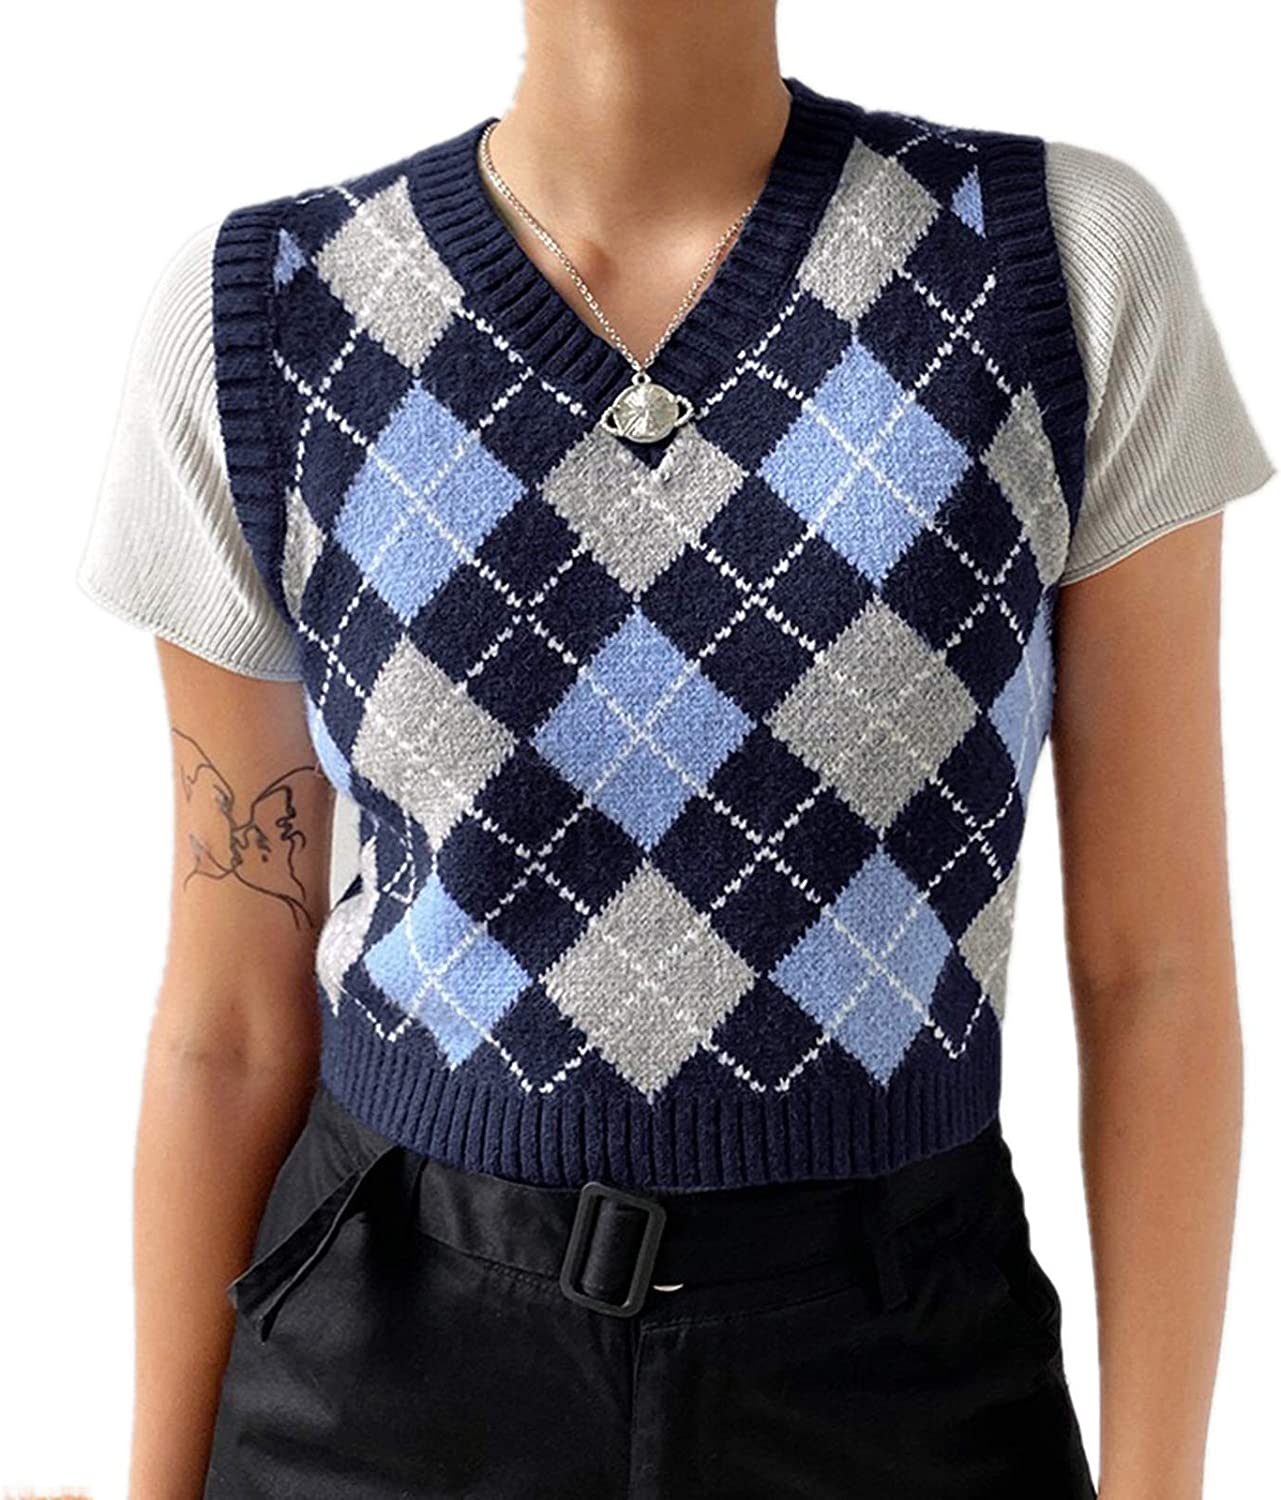 Verwachting olie Onaangeroerd Hyipels Argyle Sweater Vest Women Y2K Plaid Knitted Streetwear Preppy Style  V Ne | eBay